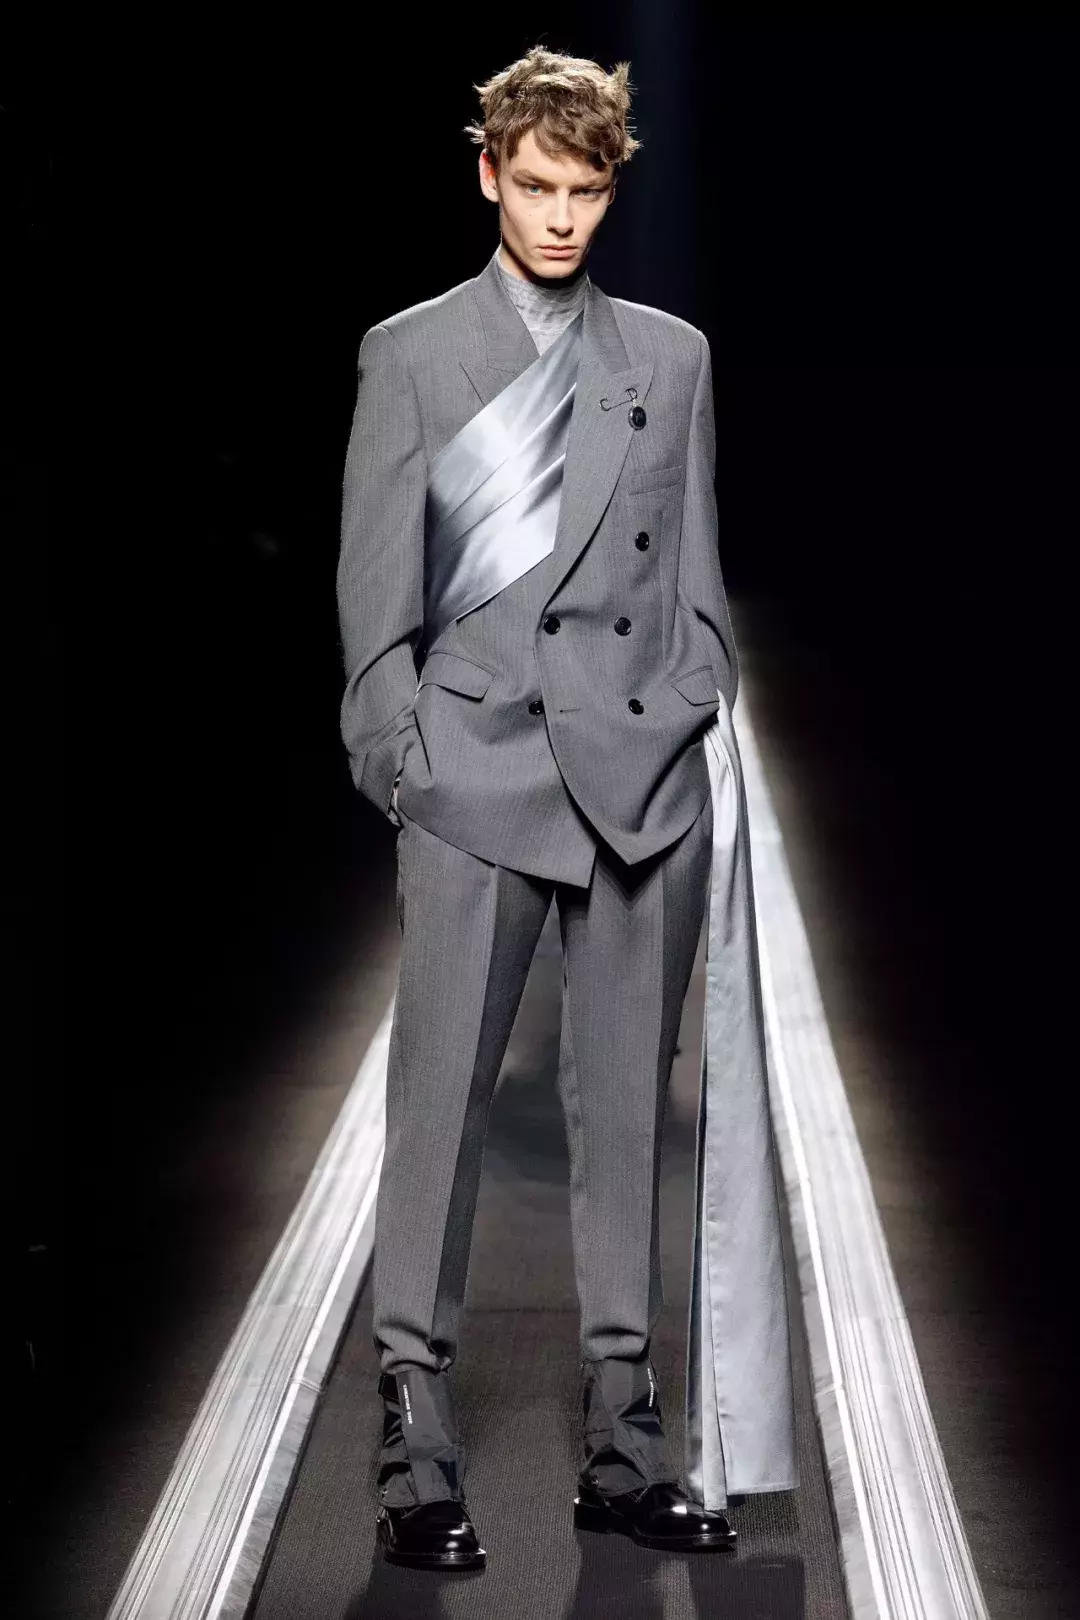 迪奥男装艺术总监：Dior是时尚的品牌，不是被奢侈裹挟的品牌